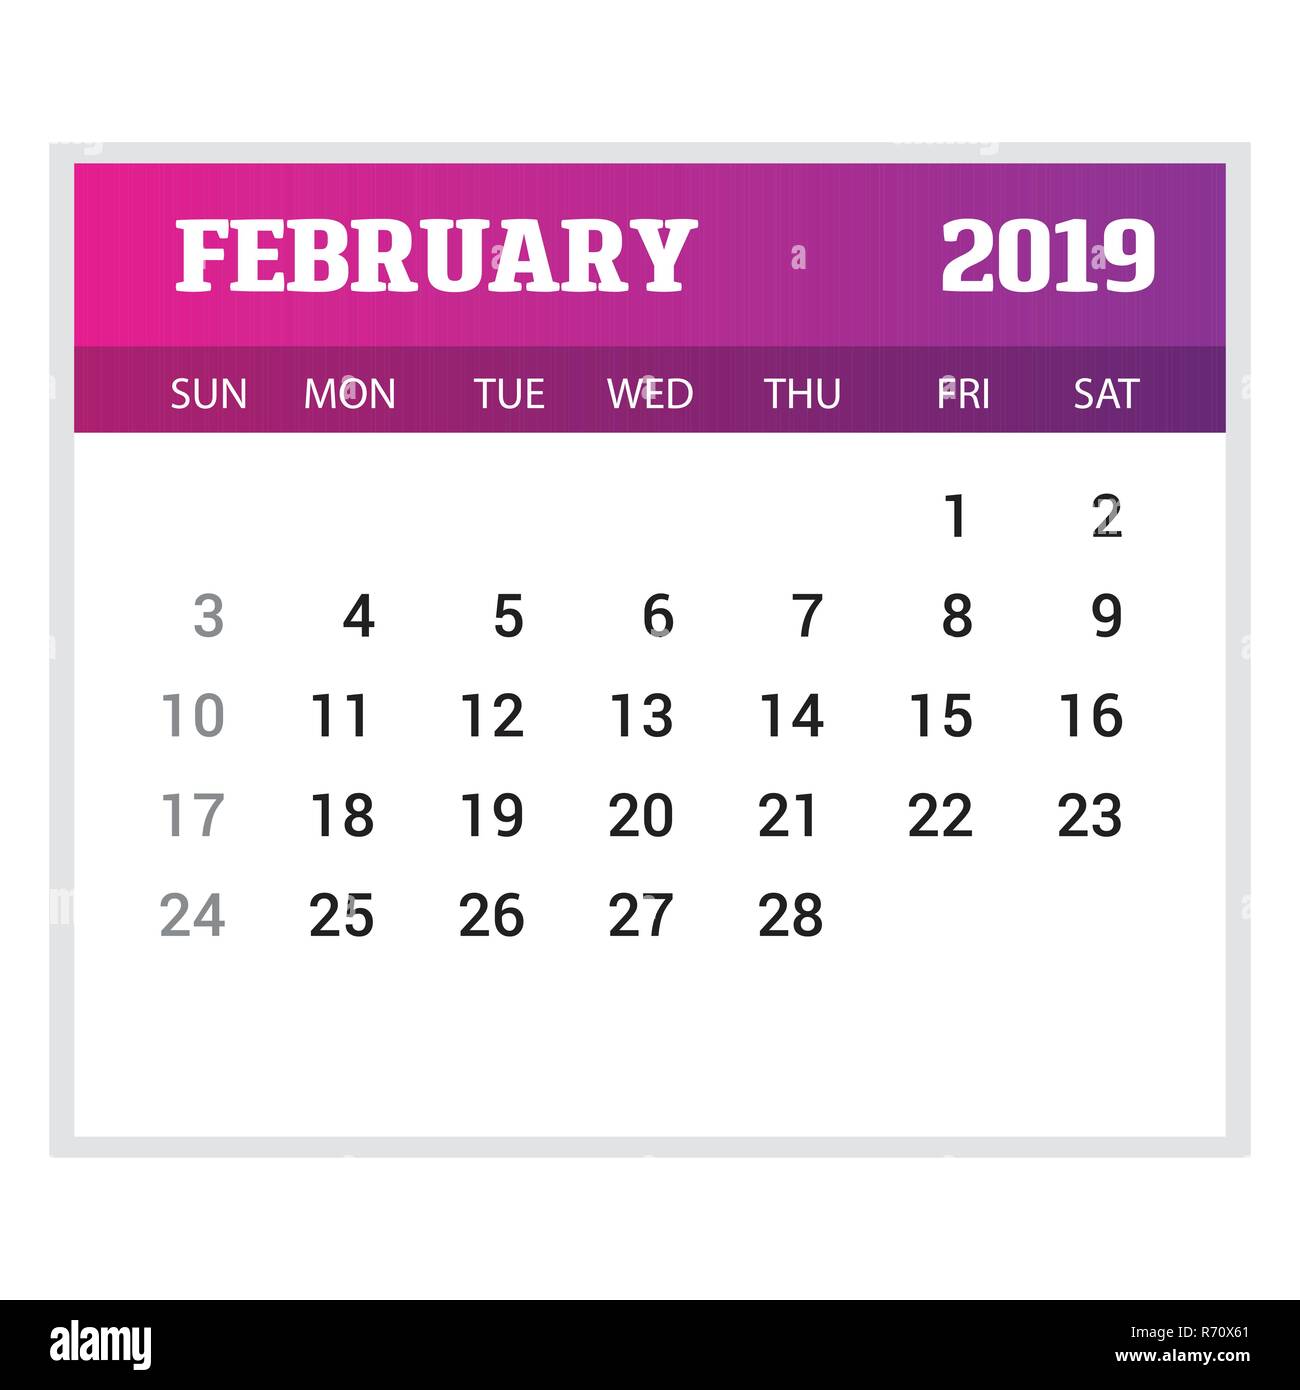 February Calendar Template from c8.alamy.com